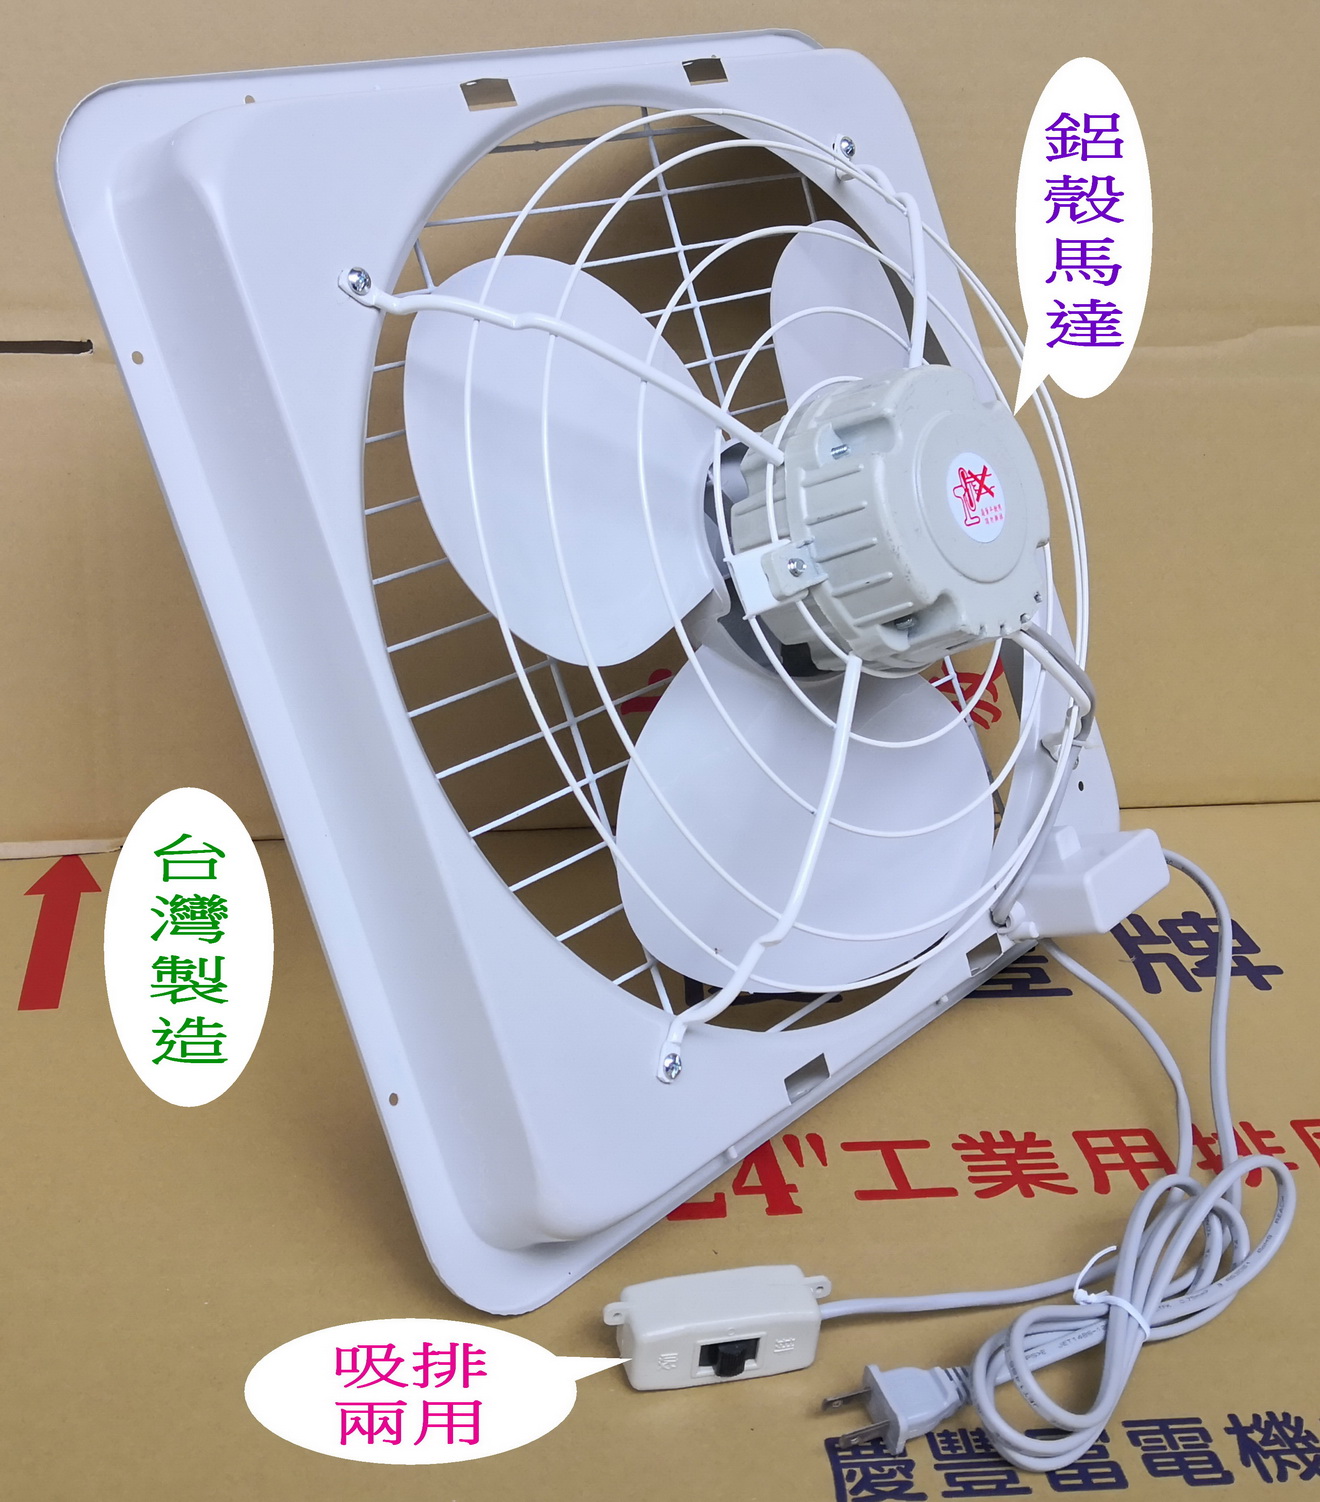 慶豐電機14吋鋁殼馬達(塑膠葉)吸排風扇.抽送風機.抽風機.抽風扇.排風機 